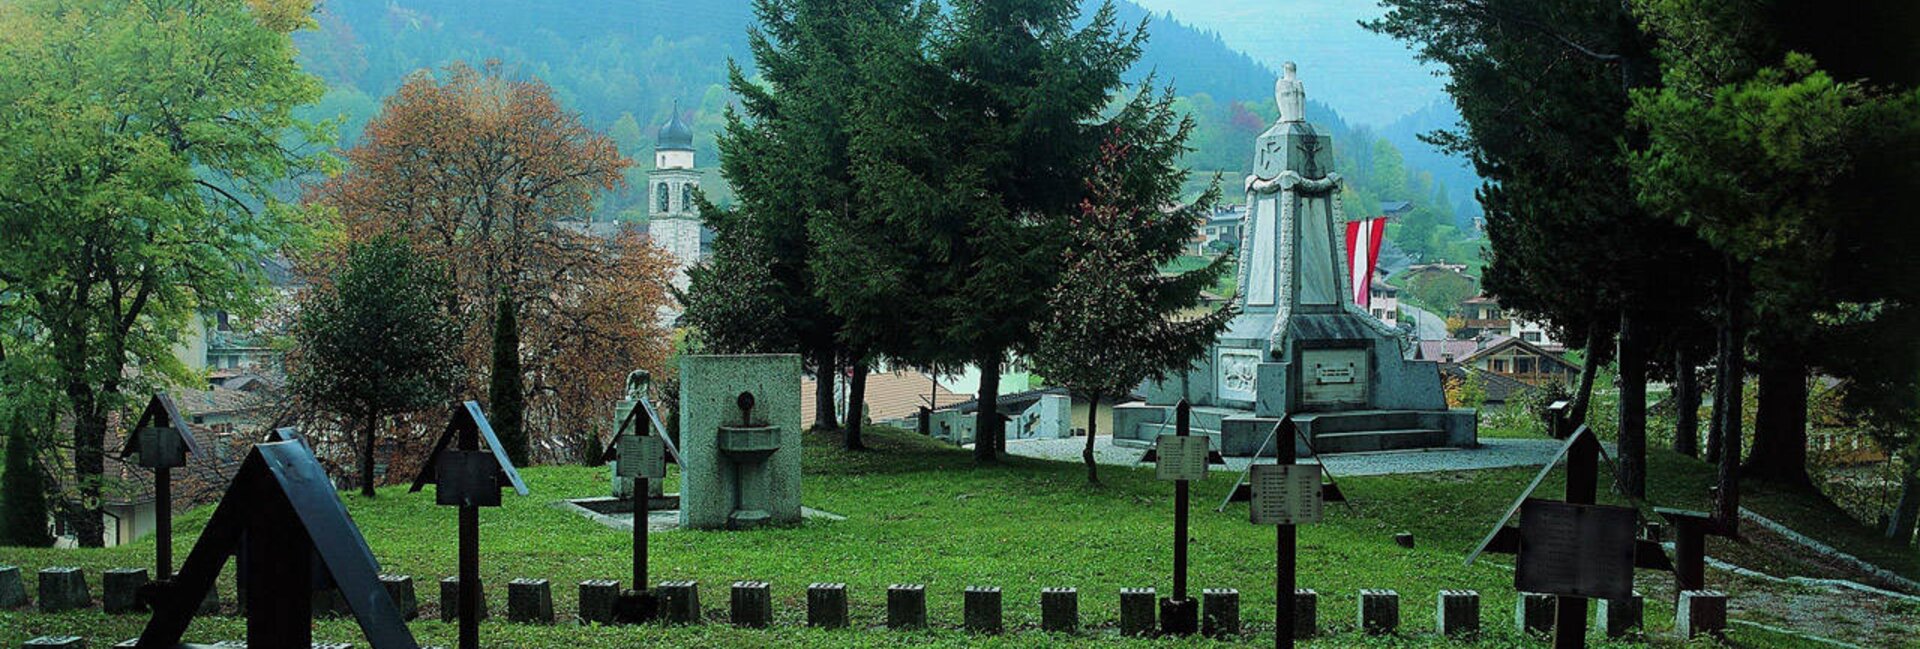 Cimitero austroungarico monumentale 